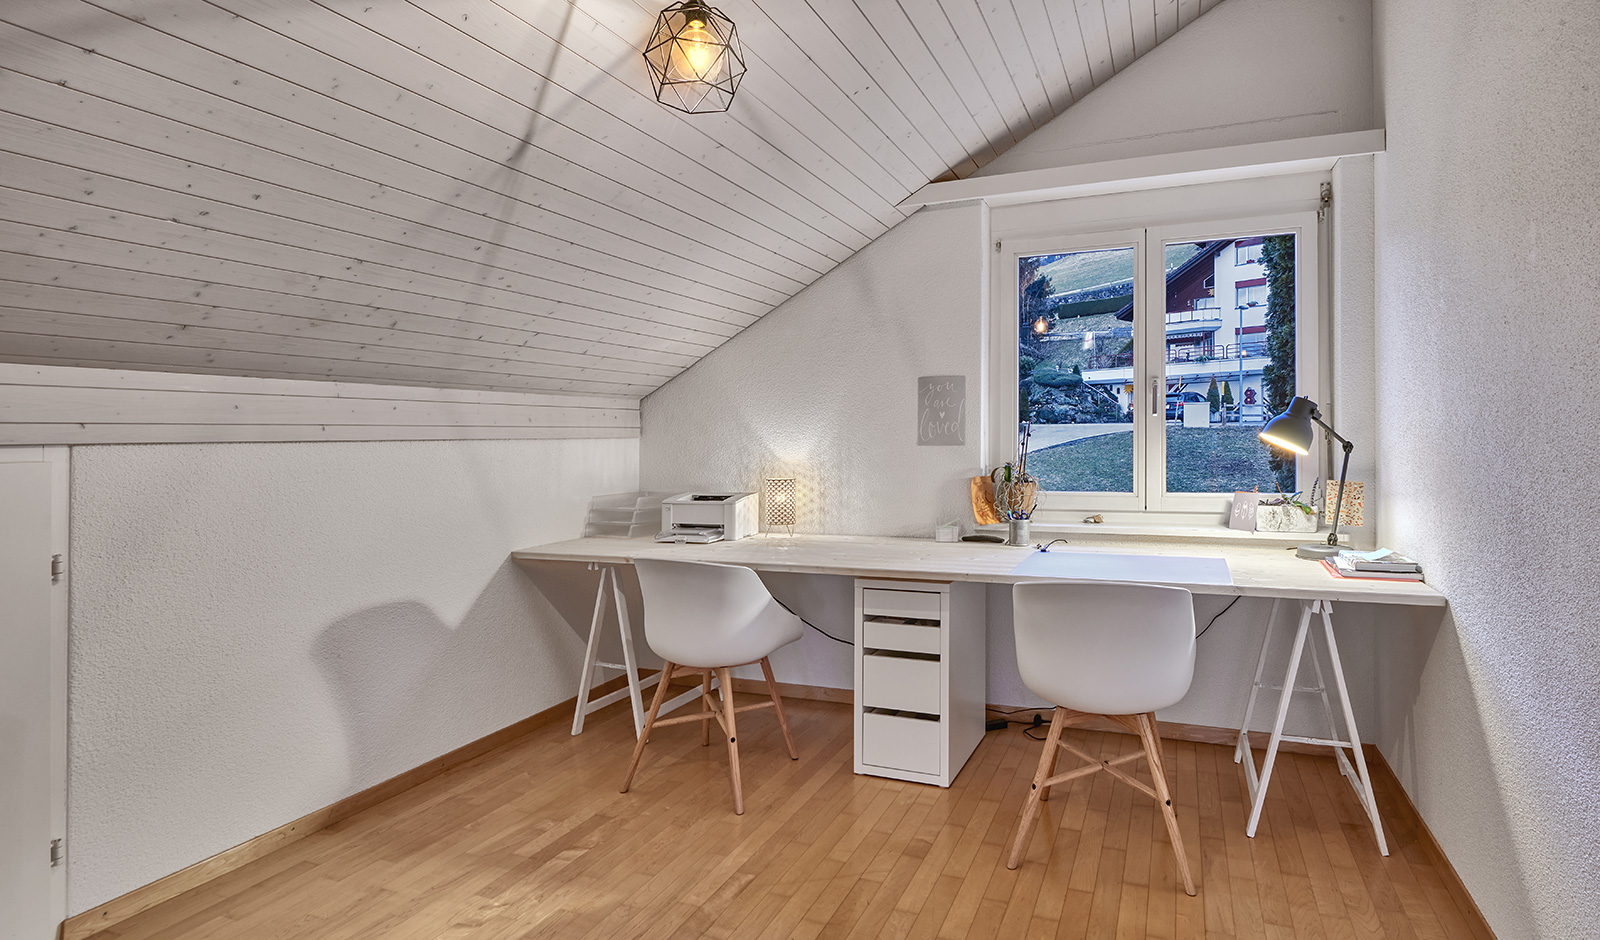 Traumhaus mit Einliegerwohnung – atemberaubendes Panorama garantiert